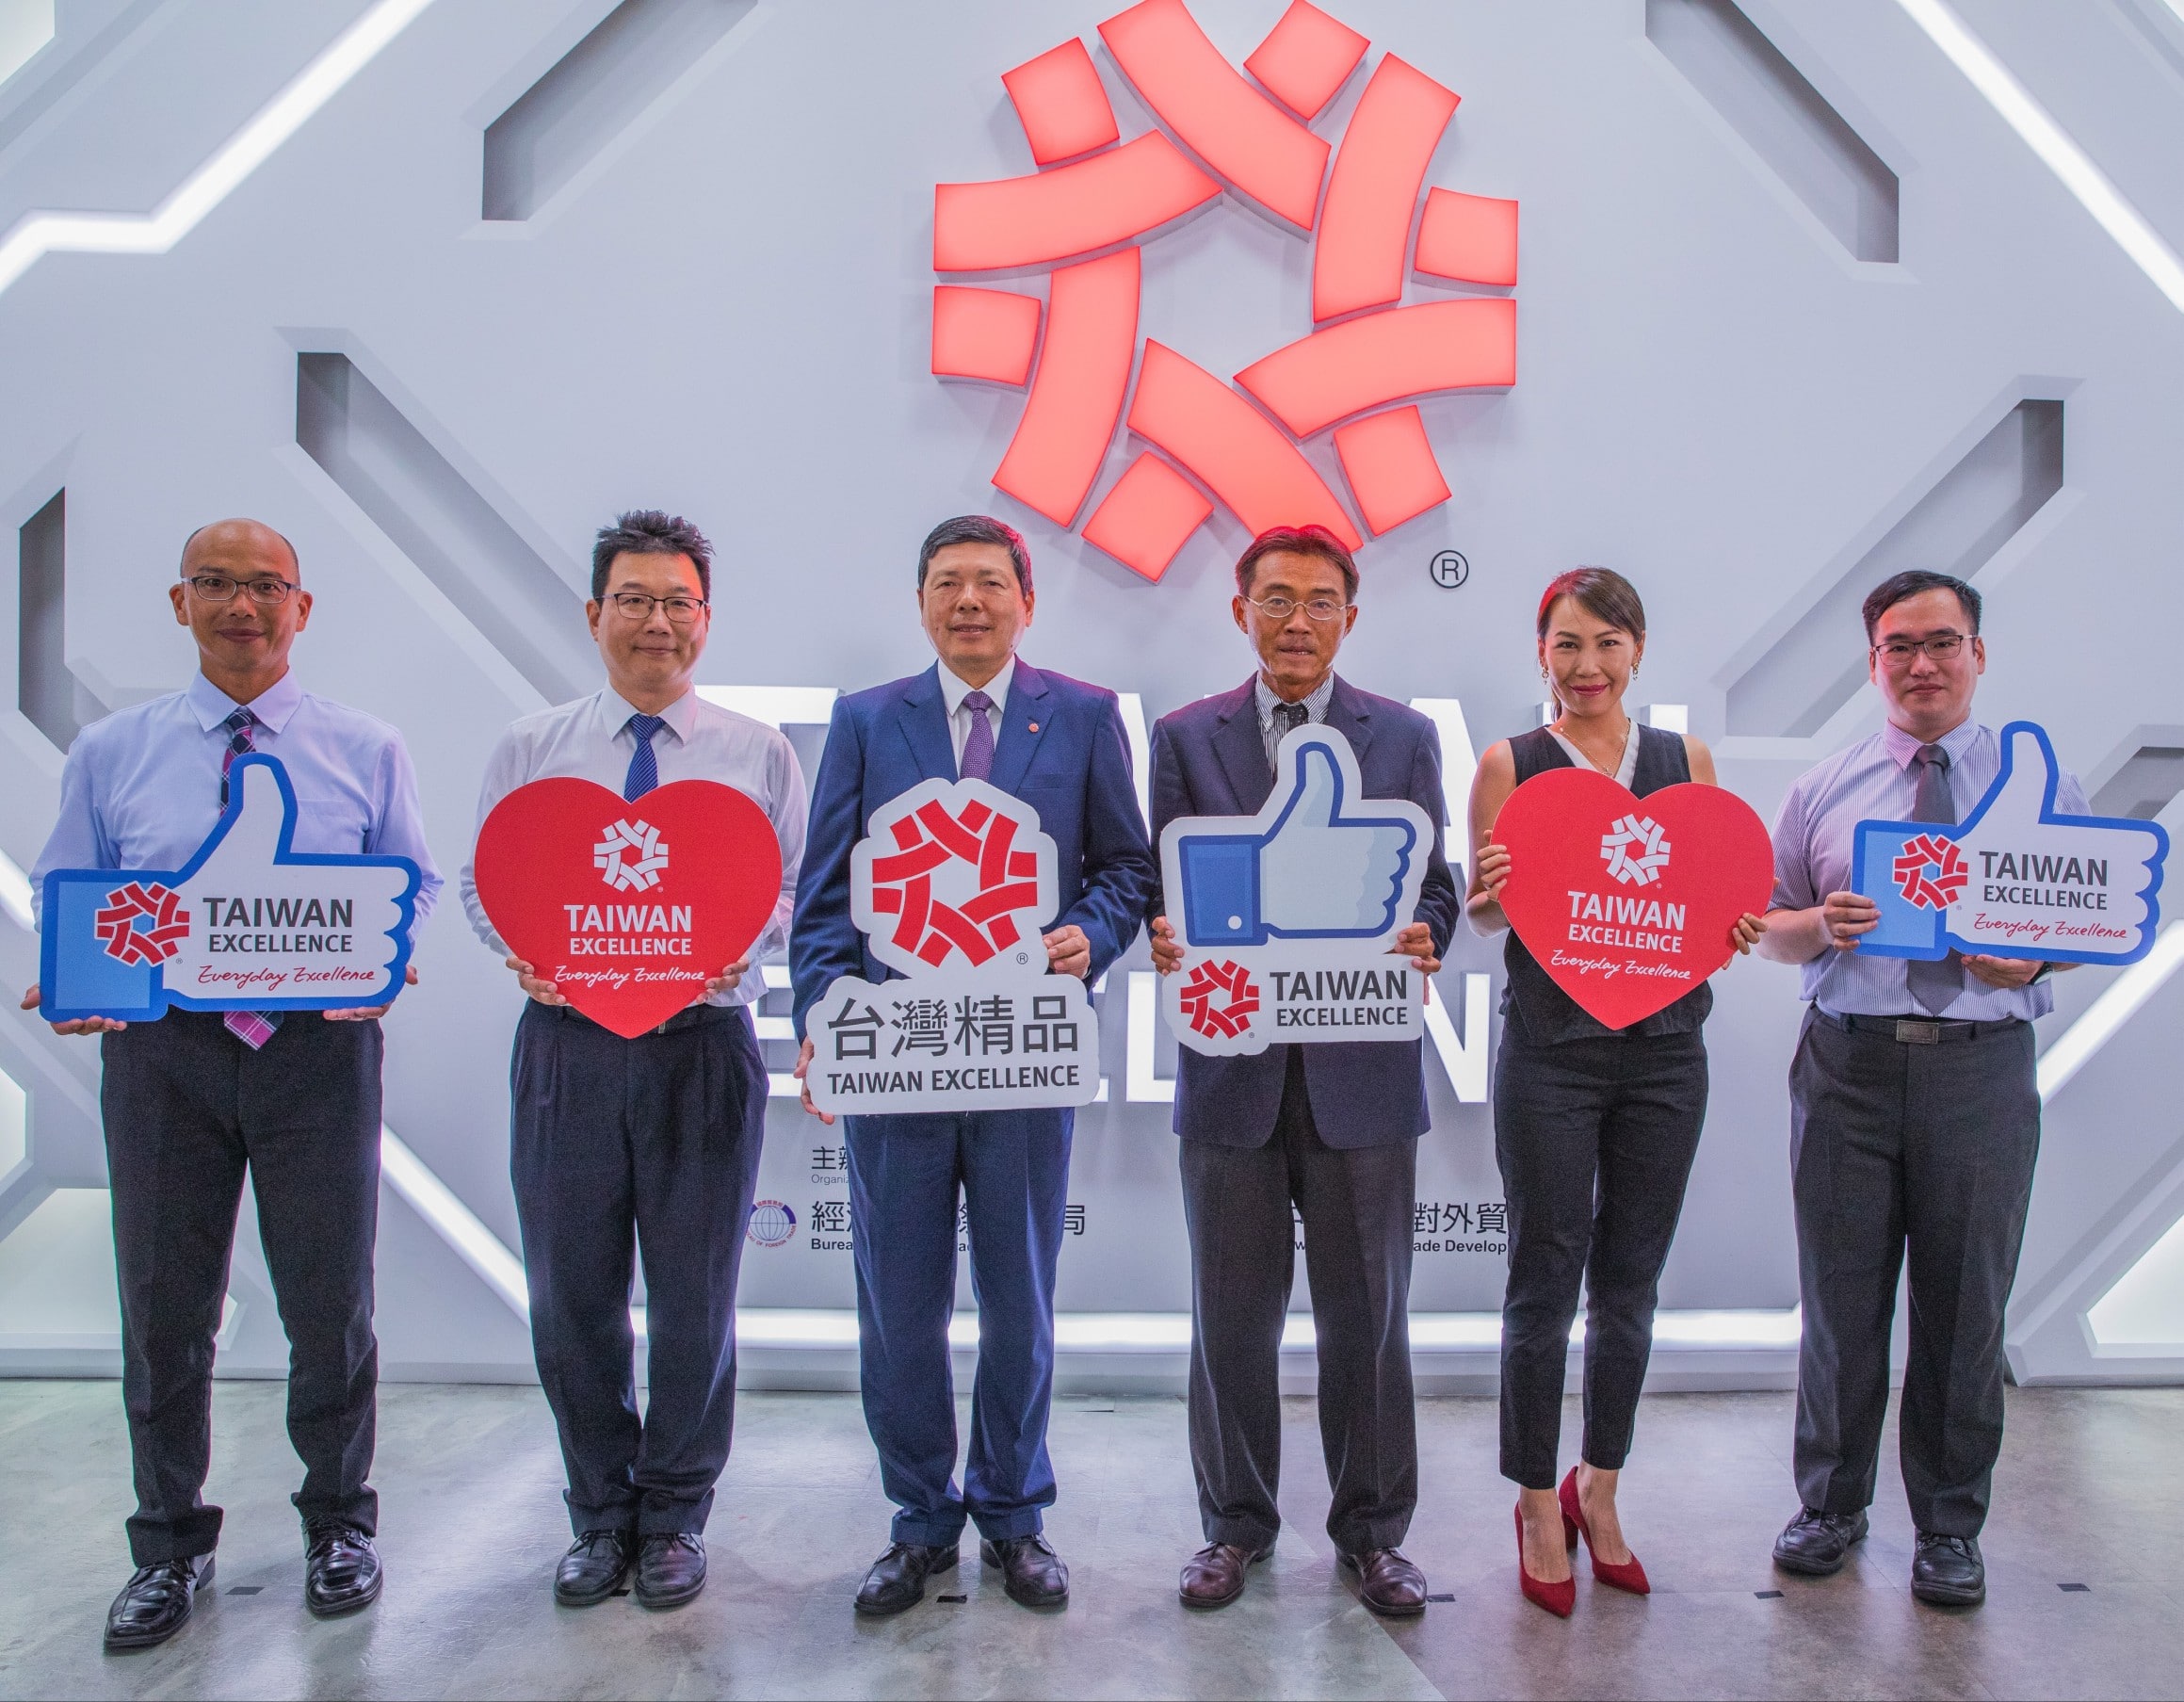 Taiwan Excellence giới thiệu công nghệ Bảng mạch điện tử tiên tiến cho tương lai